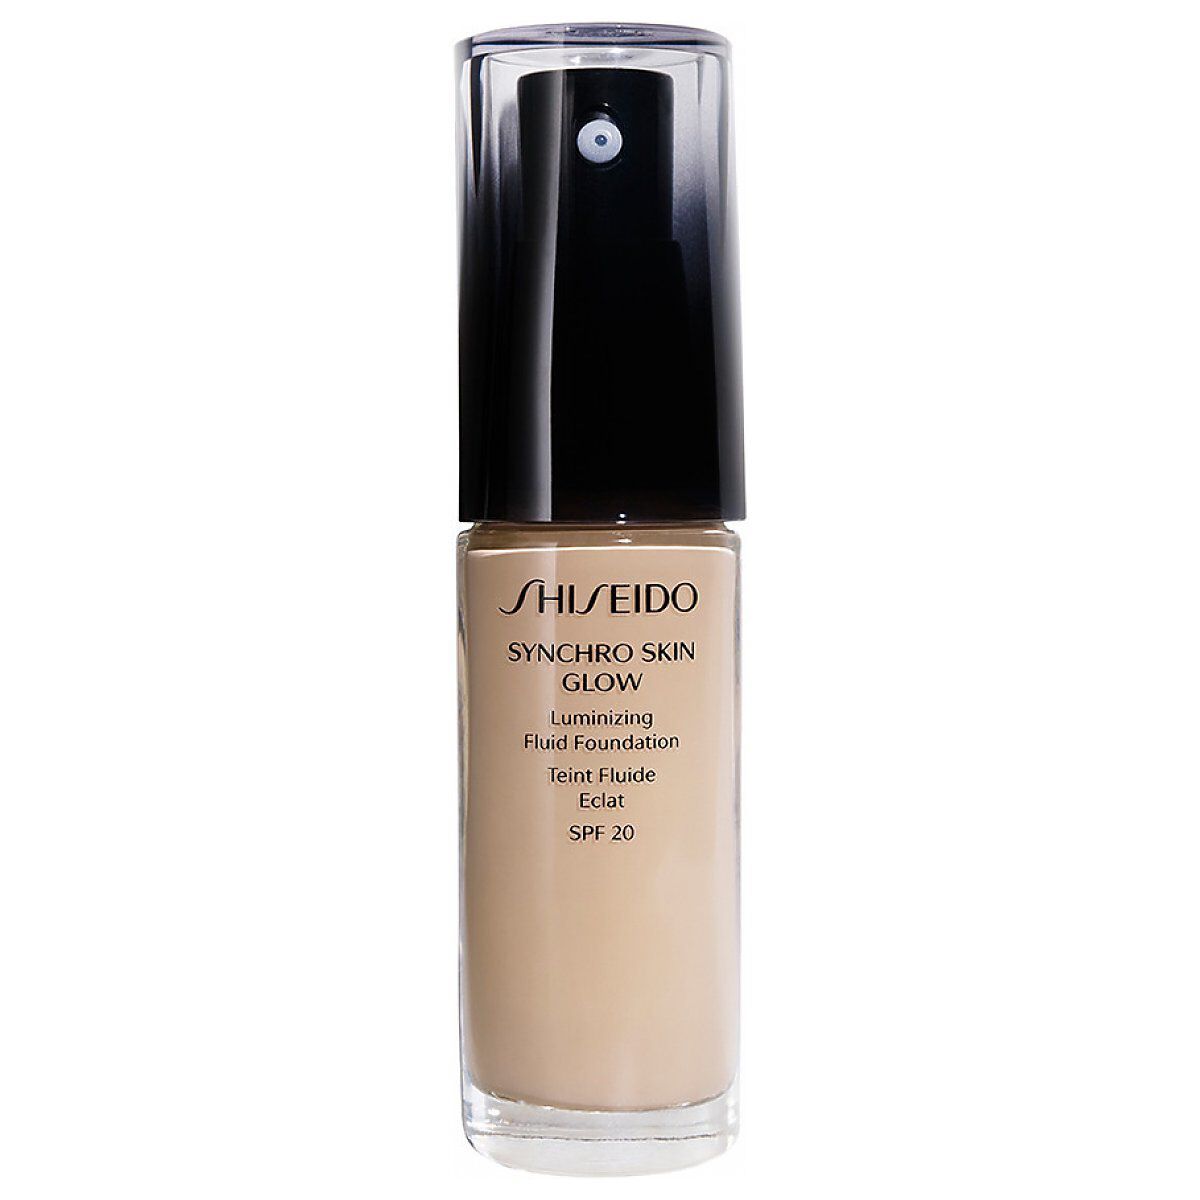 Жидкая тональная основа golden 1 spf20 Shiseido Synchro Skin Glow Luminizing Fluid Foundation, 30 мл цена и фото